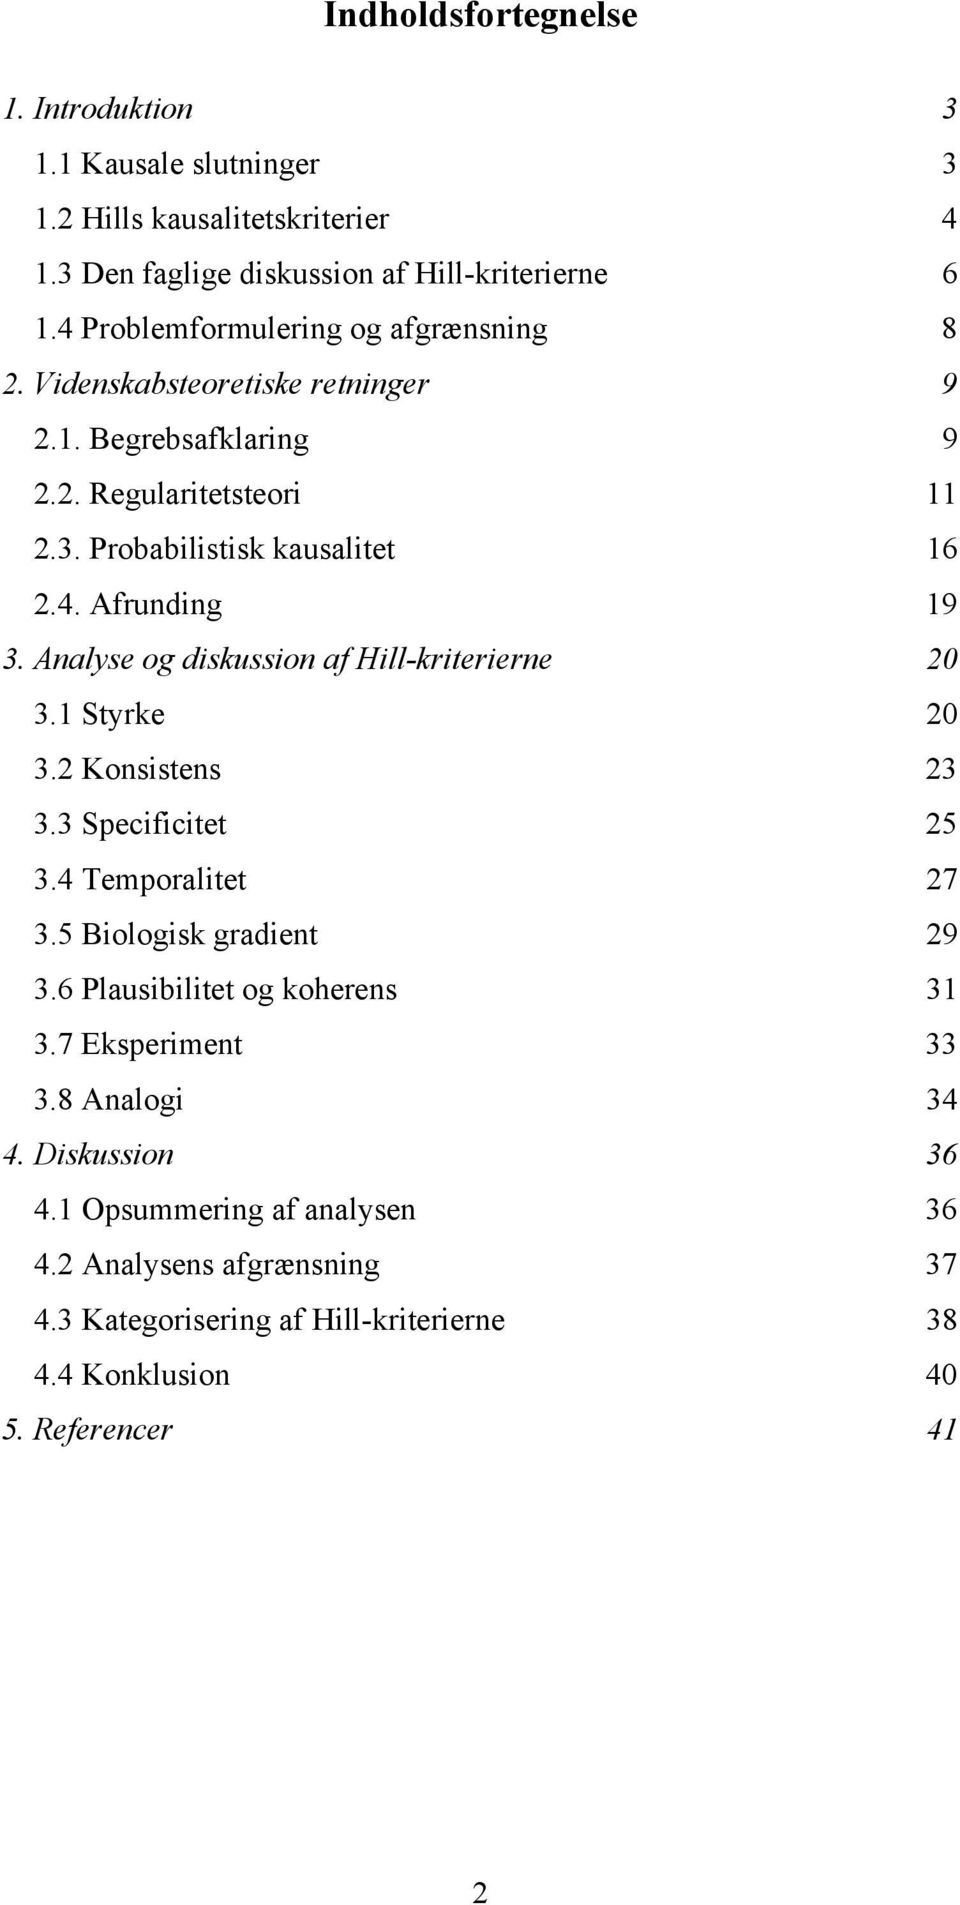 Analyse og diskussion af Hill-kriterierne 20 3.1 Styrke 20 3.2 Konsistens 23 3.3 Specificitet 25 3.4 Temporalitet 27 3.5 Biologisk gradient 29 3.